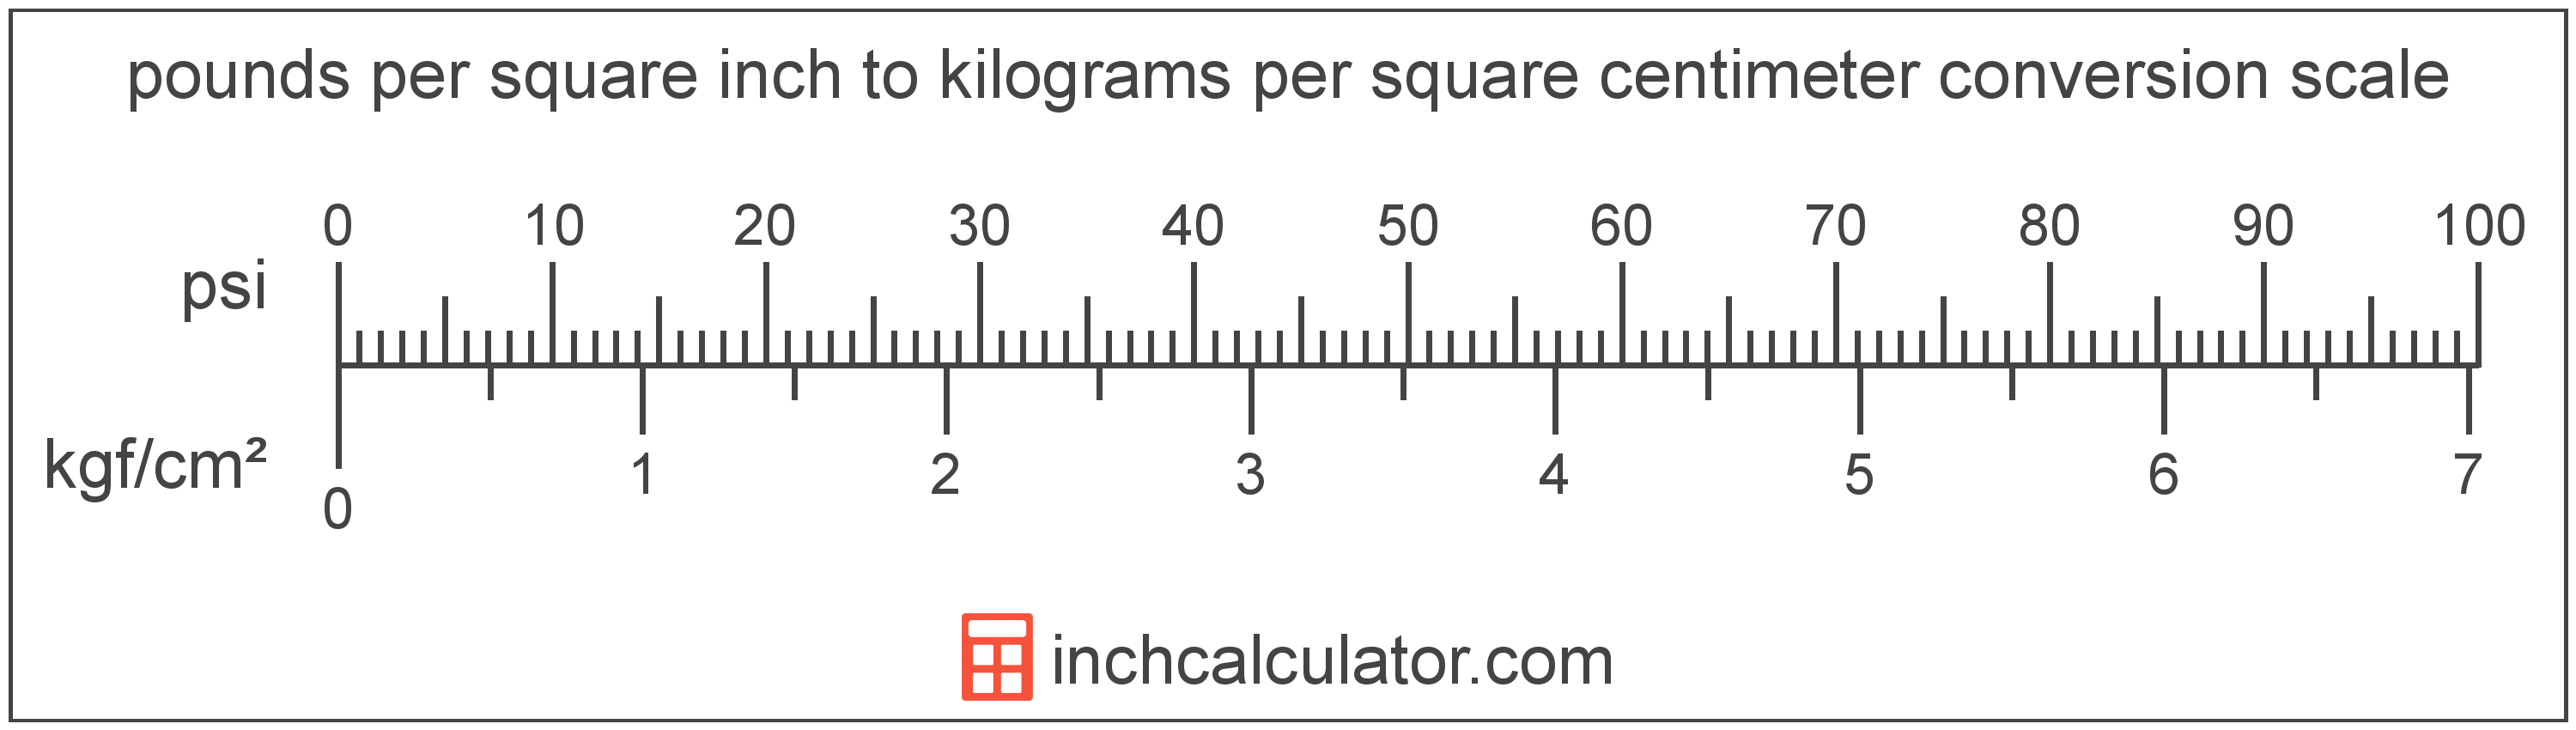 conversion scale showing pounds per square inch and equivalent kilograms per square centimeter pressure values